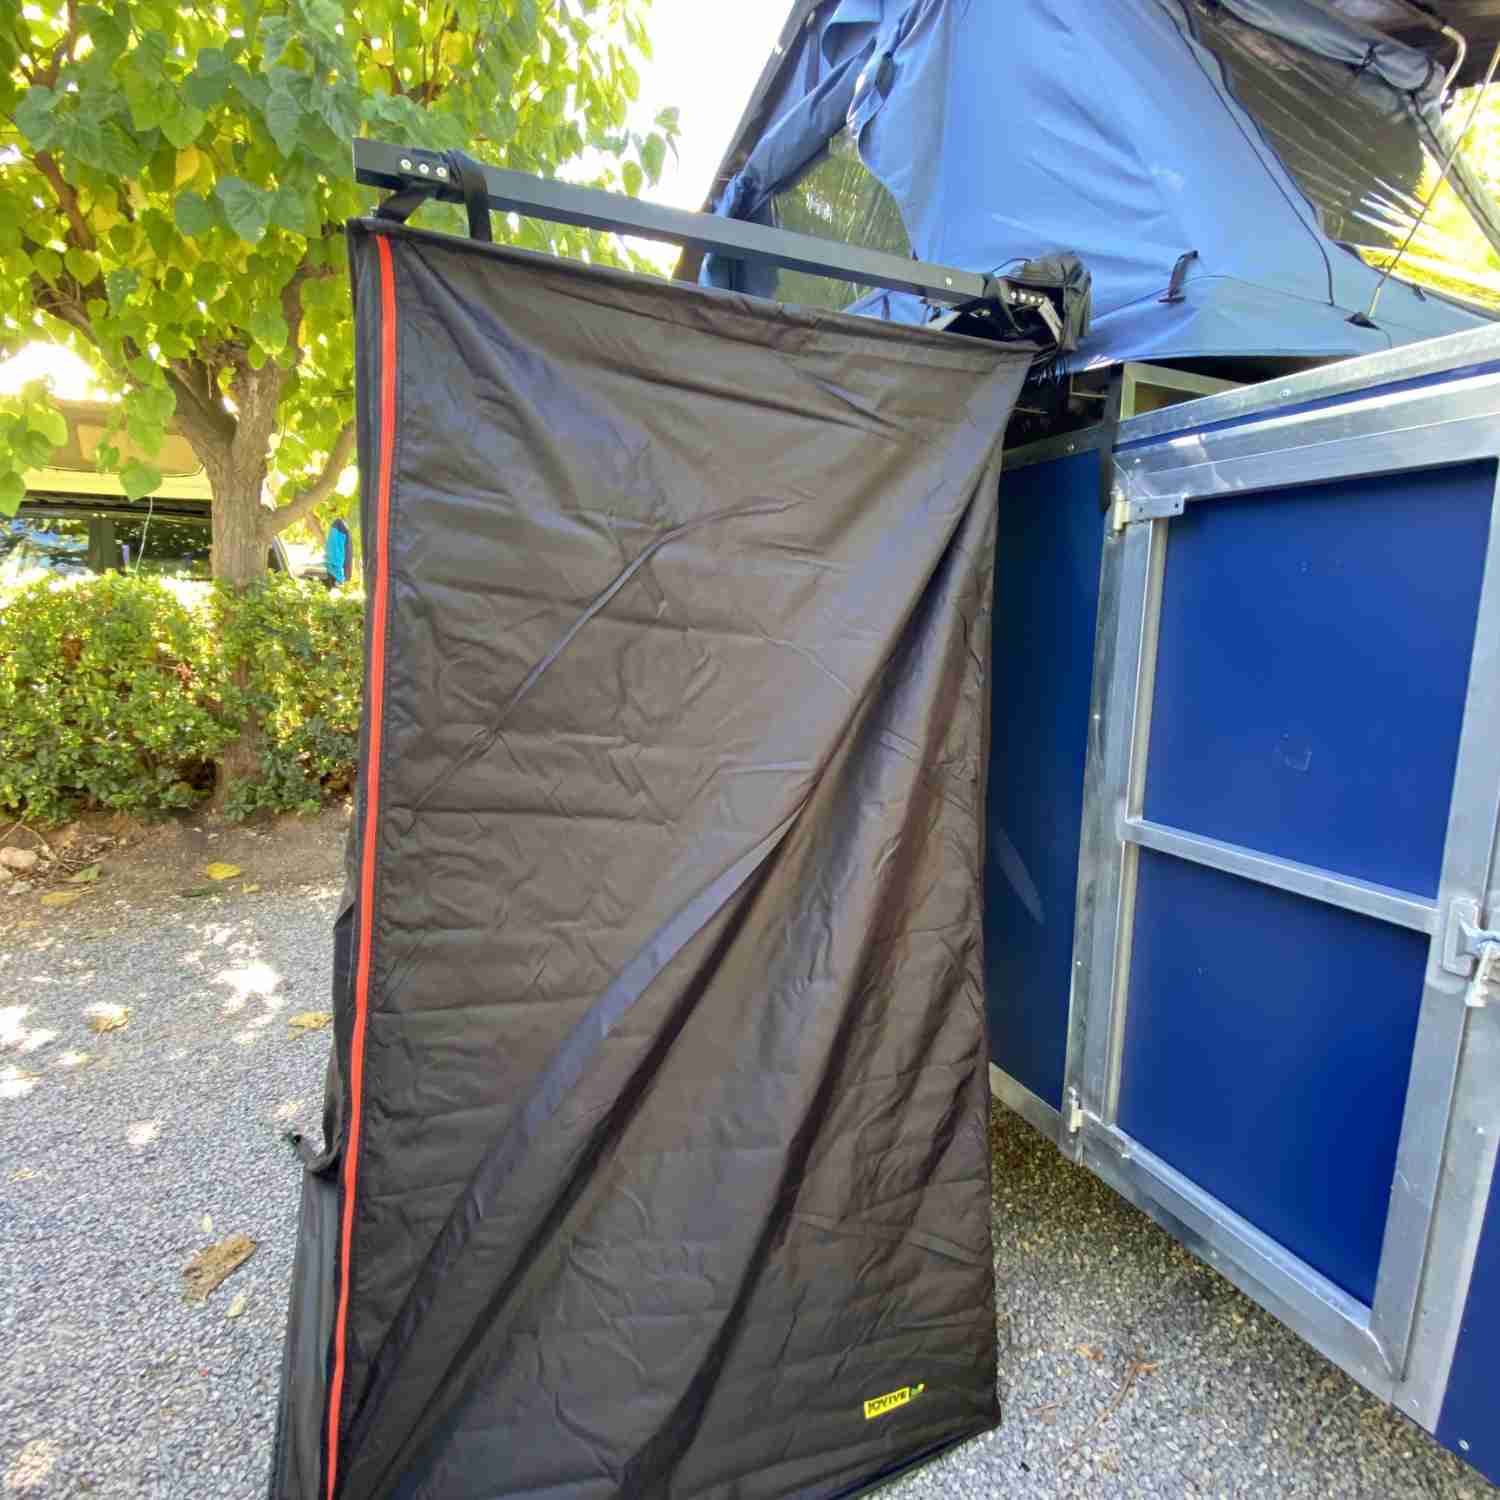 Cabine de douche / dressing pour tente de toit Jovive